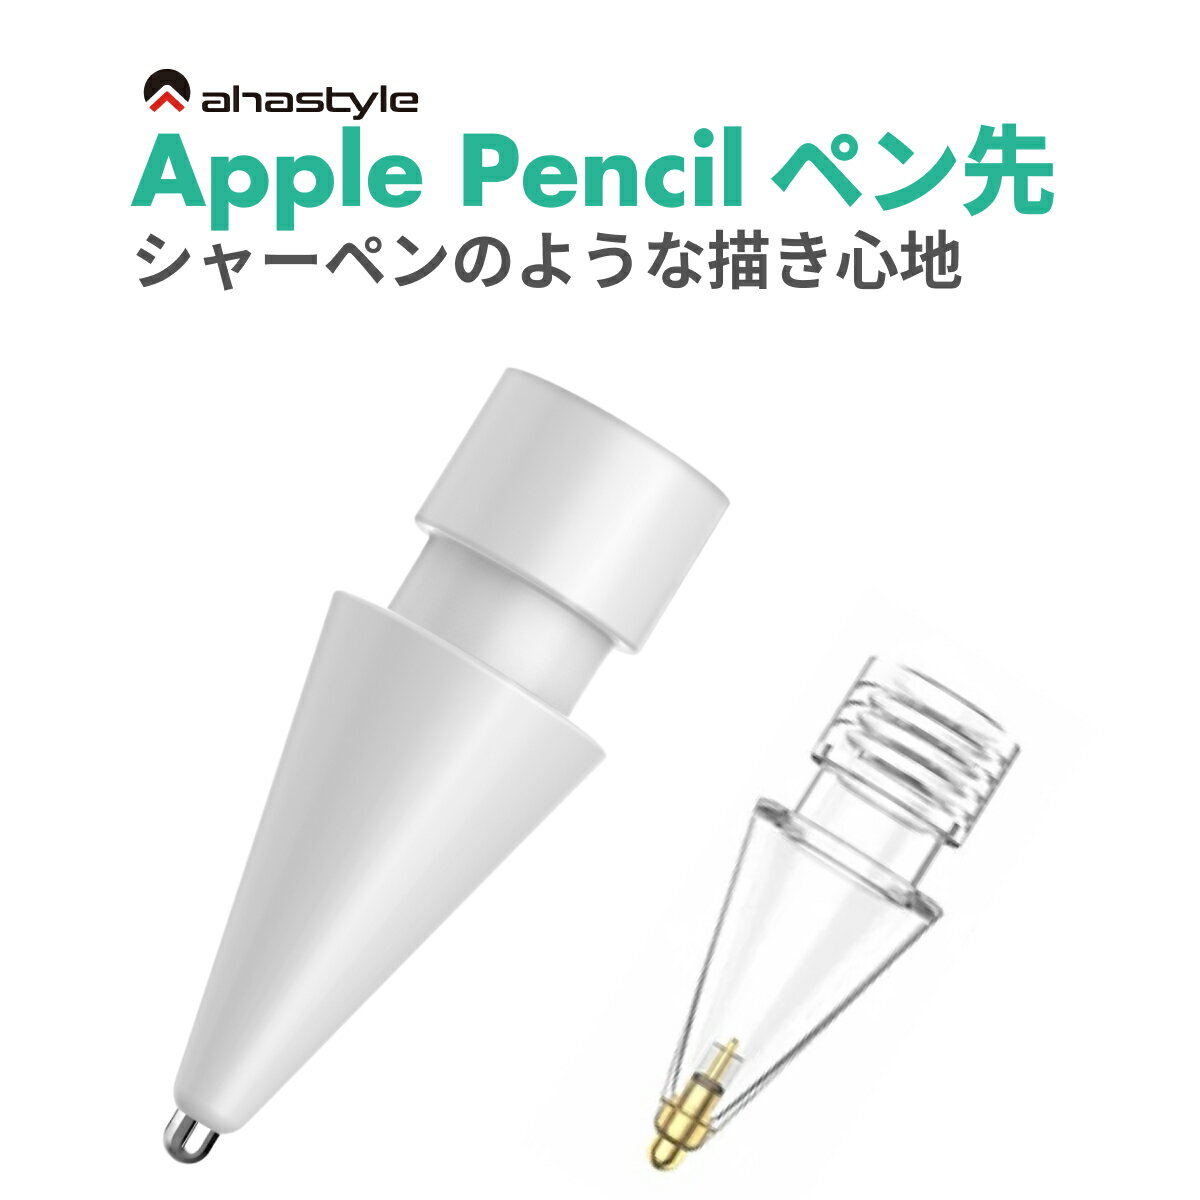 Apple Pencil 極細 ペン先 アップルペンシル 第一世代 第二世代 金属 メタル シャーペンの様な書き心地 ペーパーライク ペンチップ 交換 書き心地 アップ イラスト 勉強 ホワイト スケルトン …